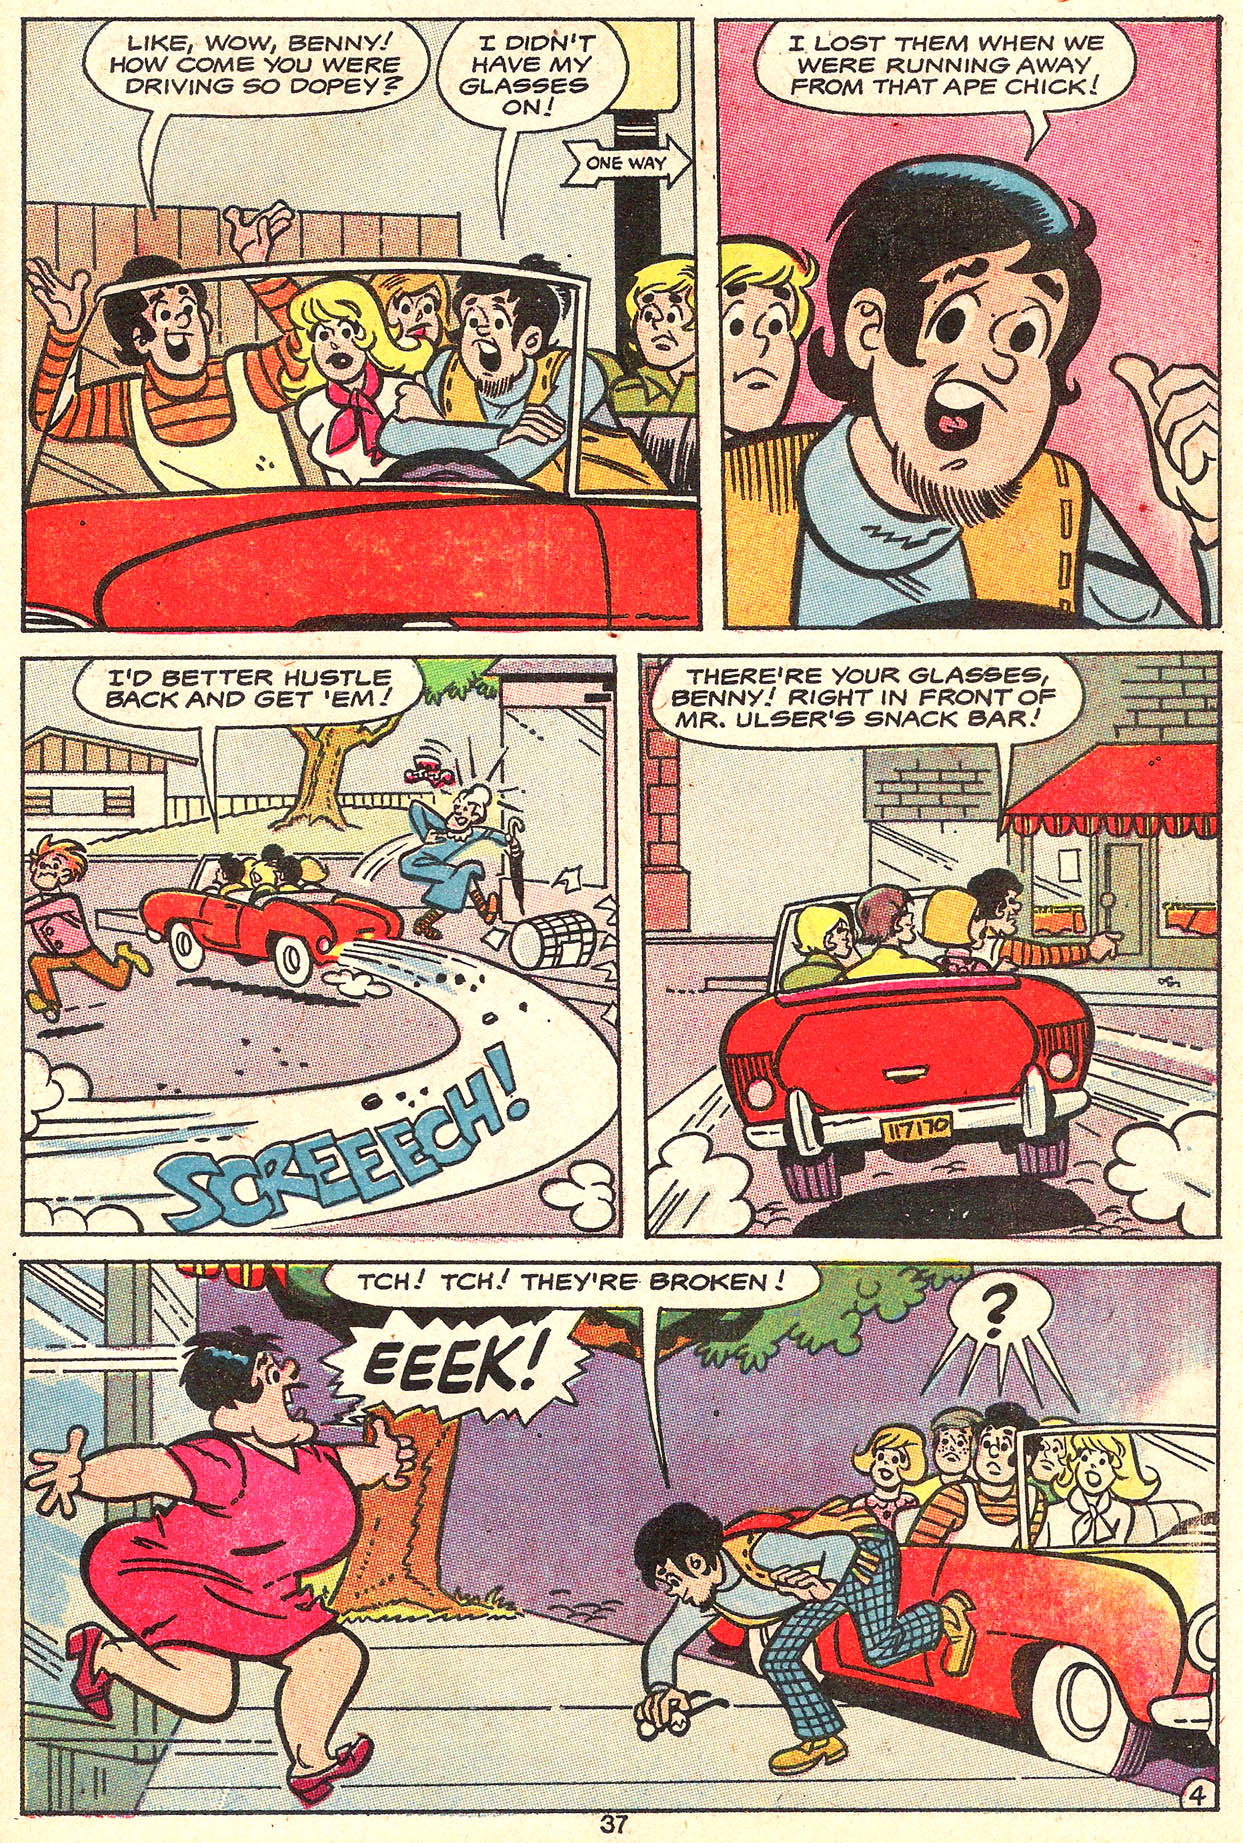 Read online Binky comic -  Issue #77 - 39